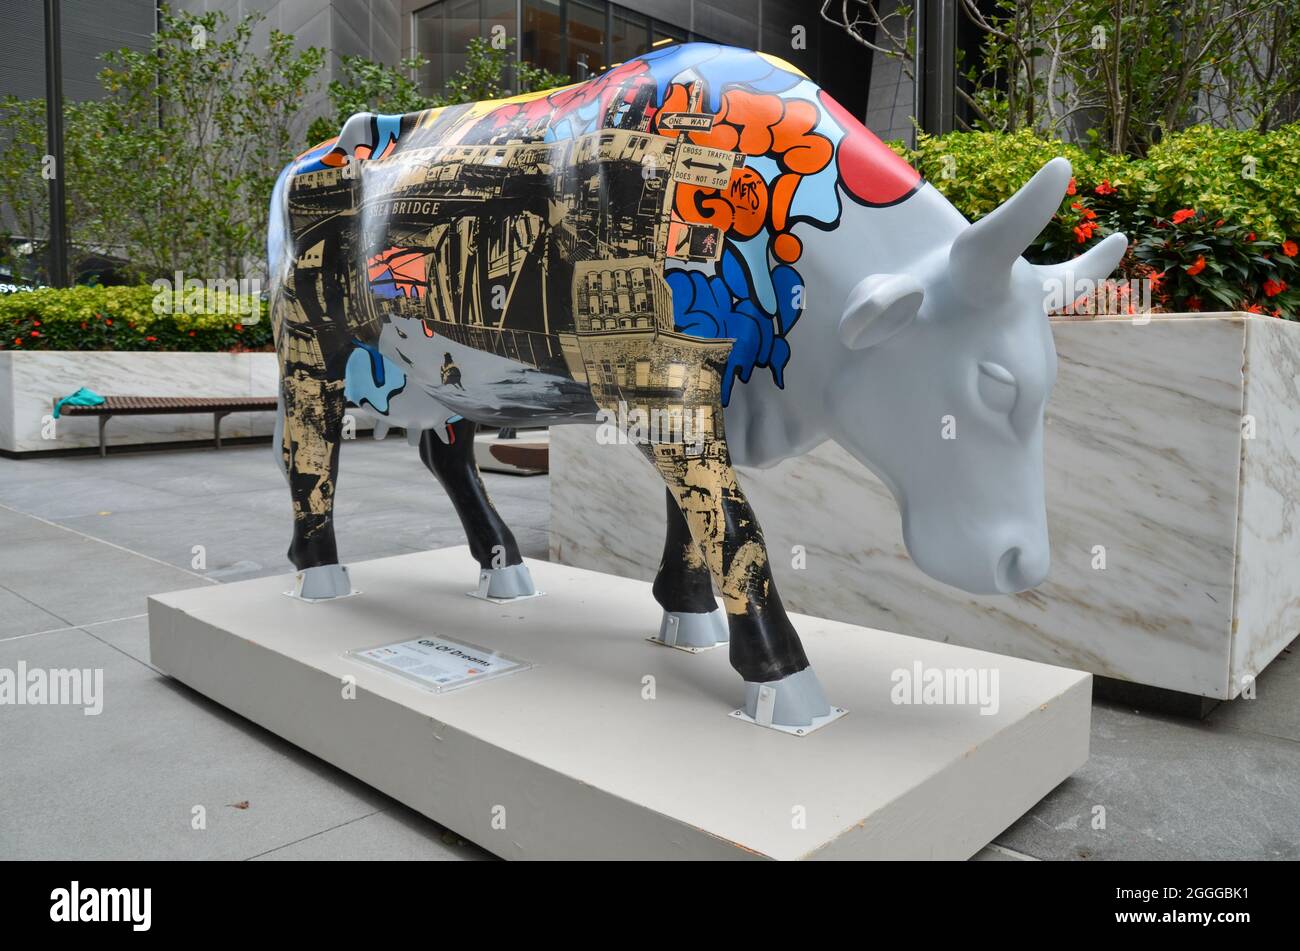 La Cow Parade è ritornata dopo 20 anni, l'esposizione di arte pubblica è visibile a Hudson Yards, New York City e sarà fino al 30 settembre 2021. Foto Stock